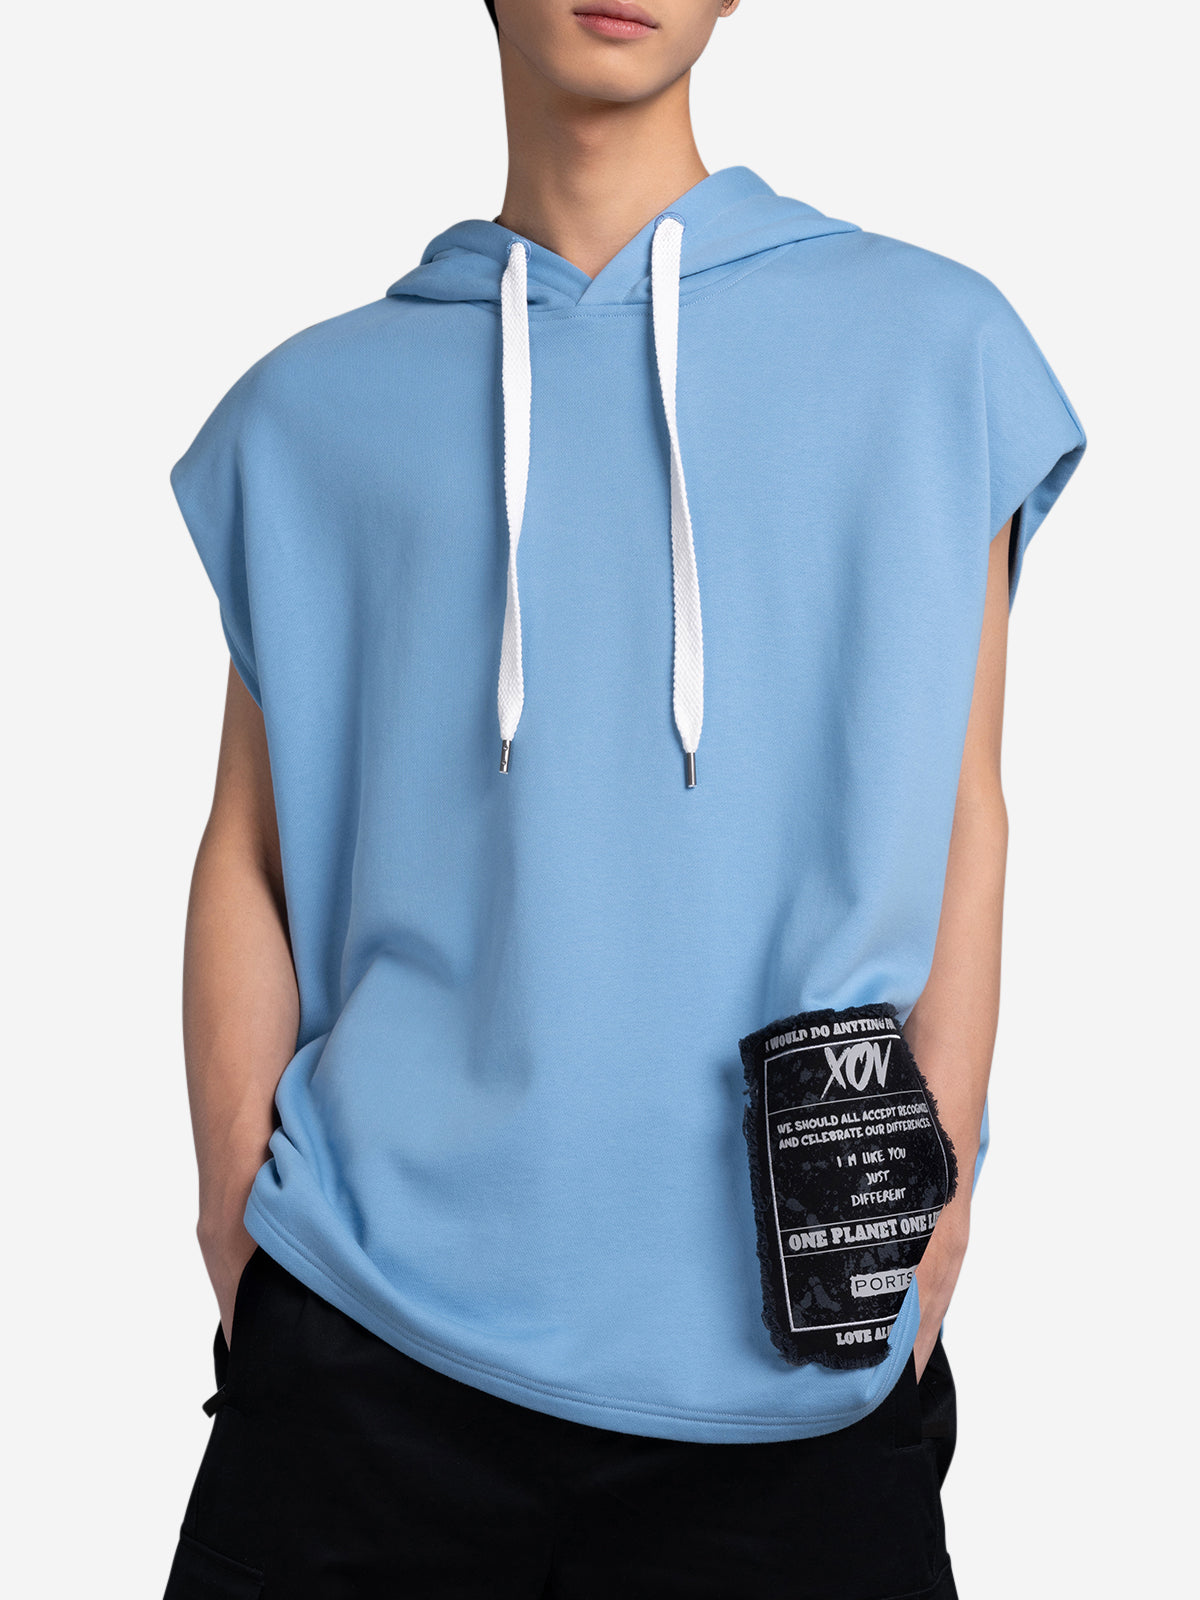 Xov Sleeveless Hoody Sweatshirt – PORTS V